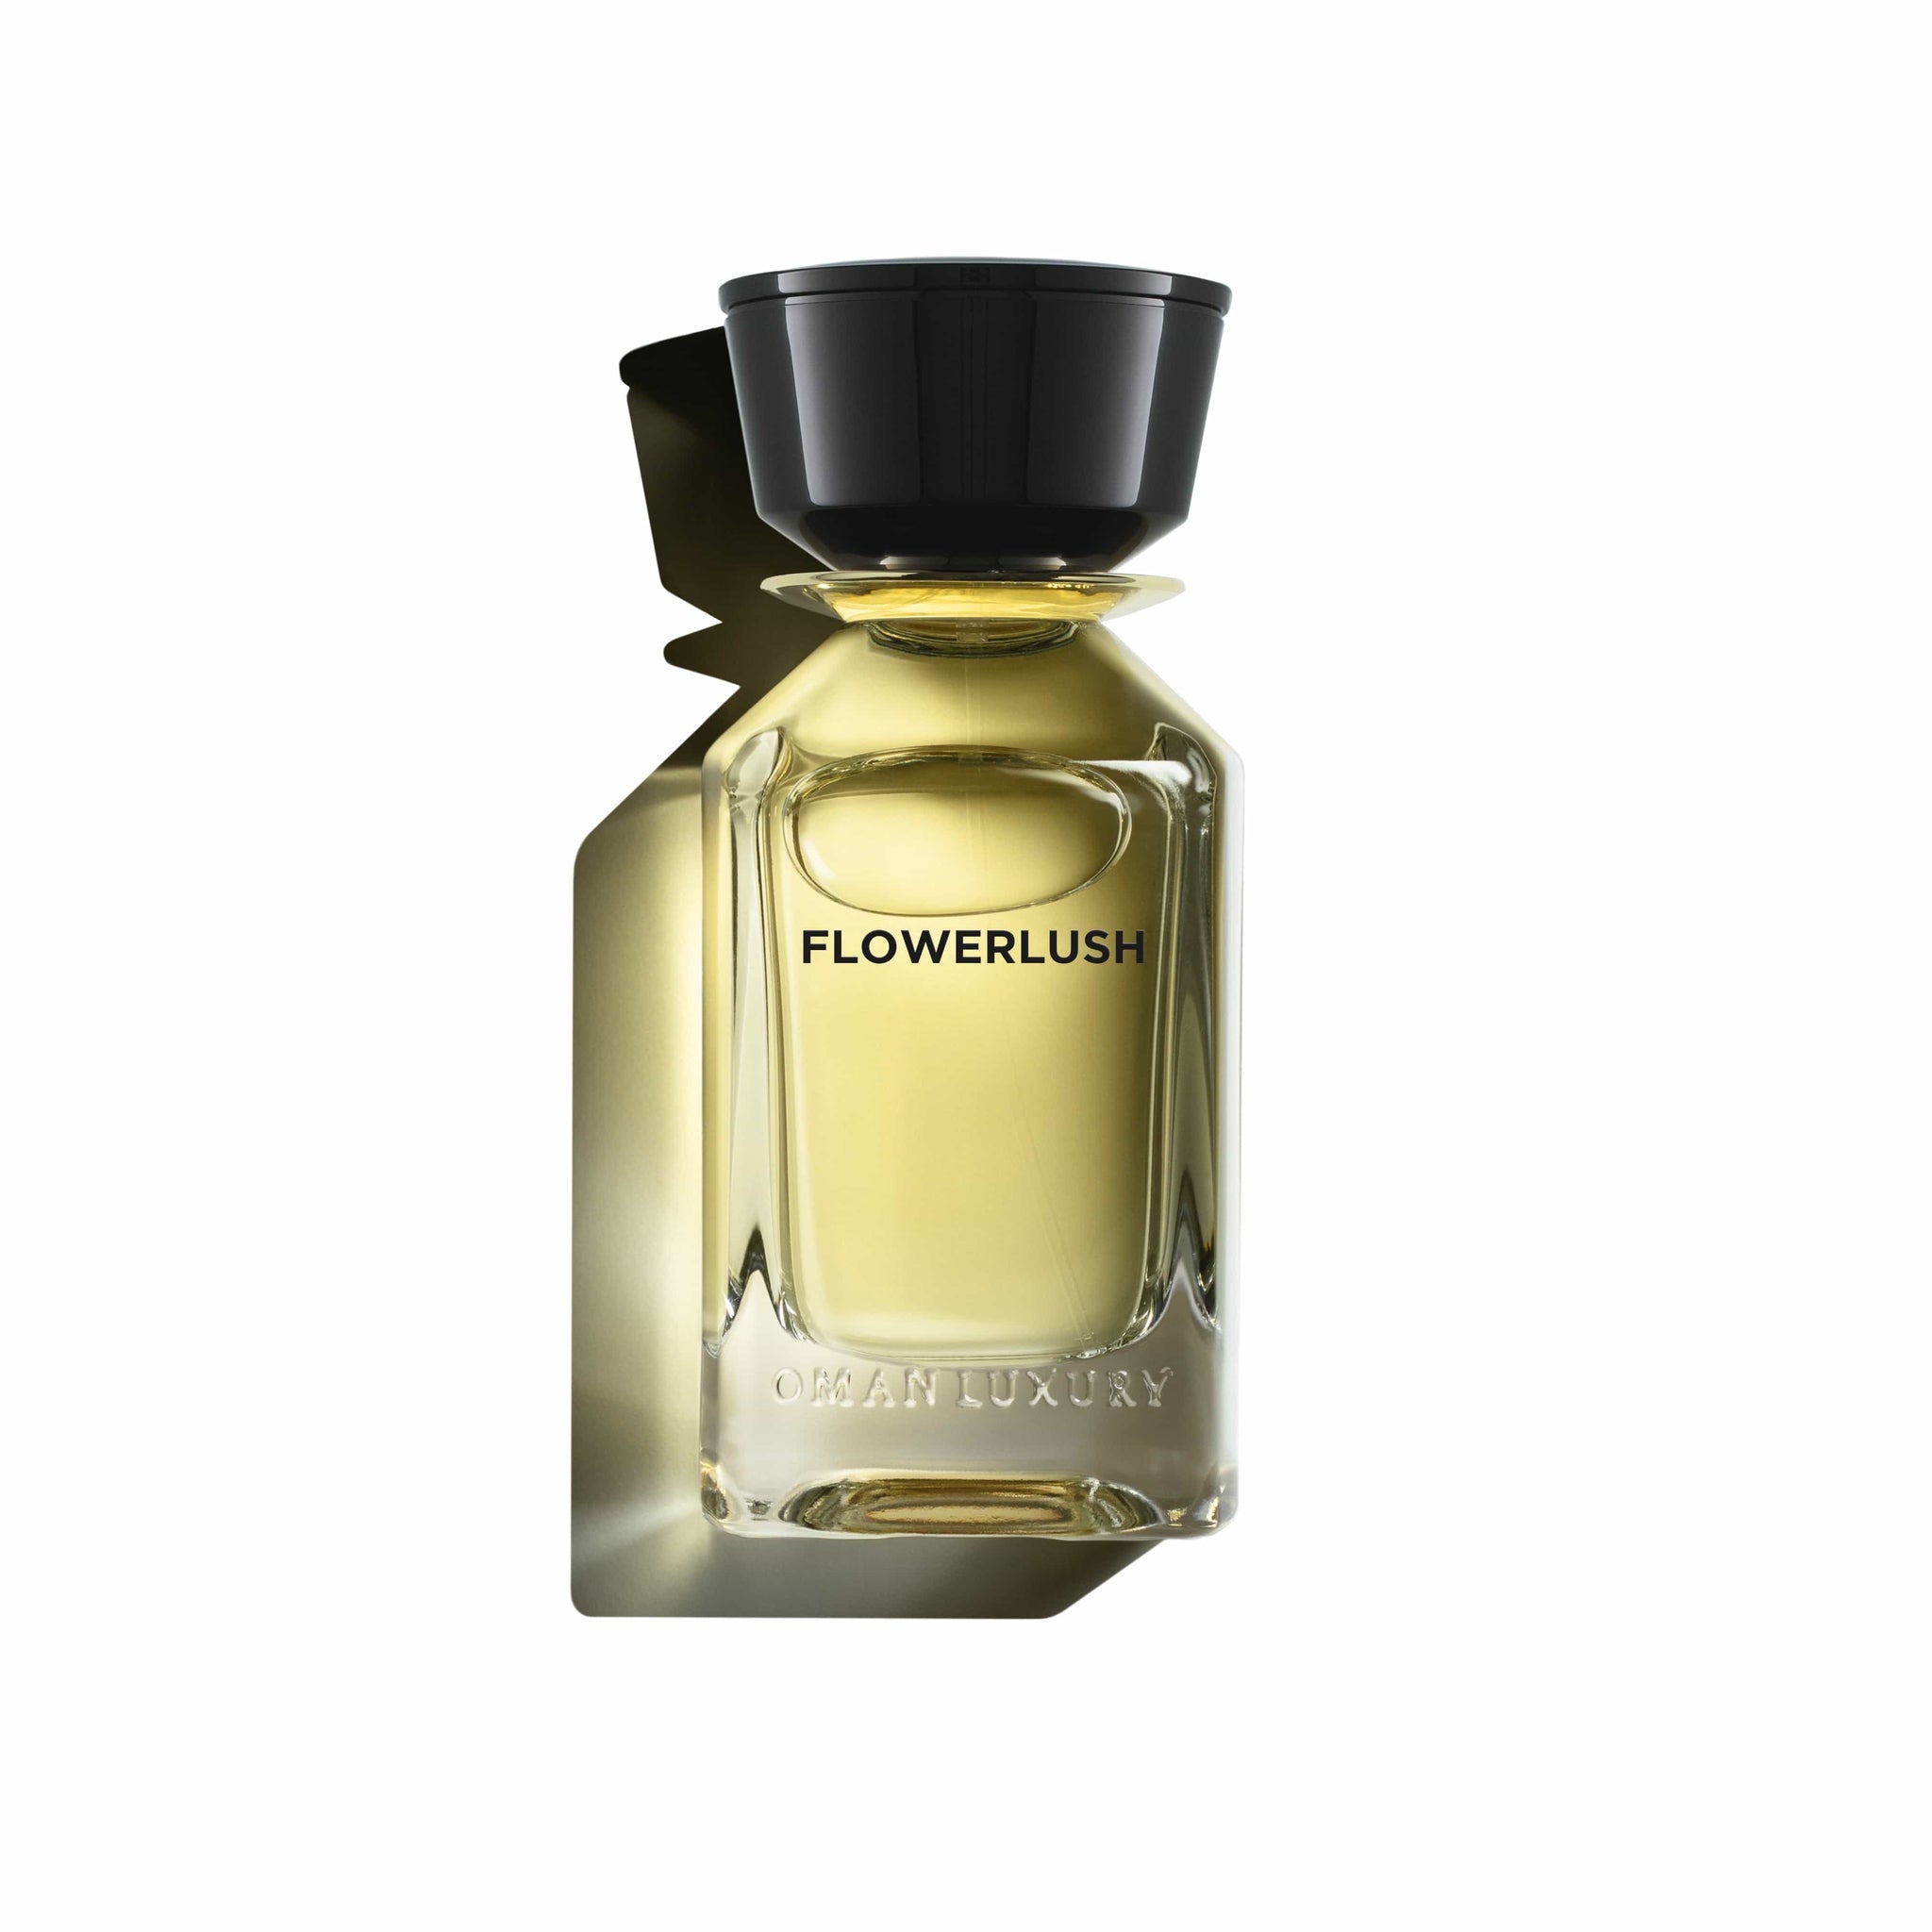 Flowerlush de Oman Luxury Eau de Parfum